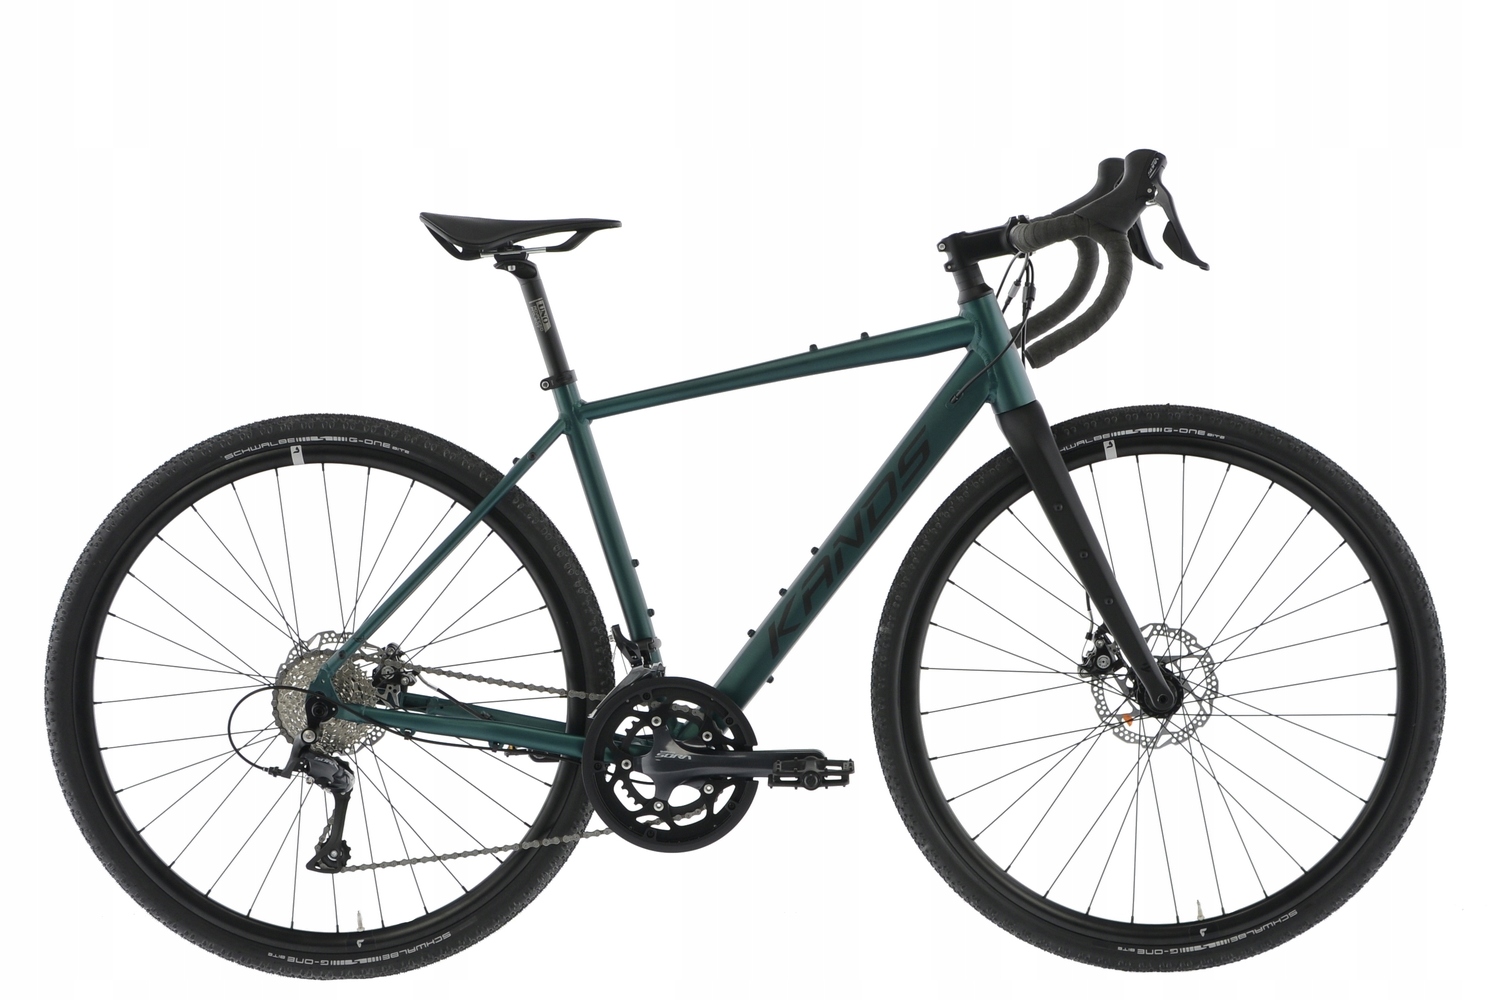 Rower Gravel Kands 28 TORO r56cm zielony SORA doskonały rower w super cenie